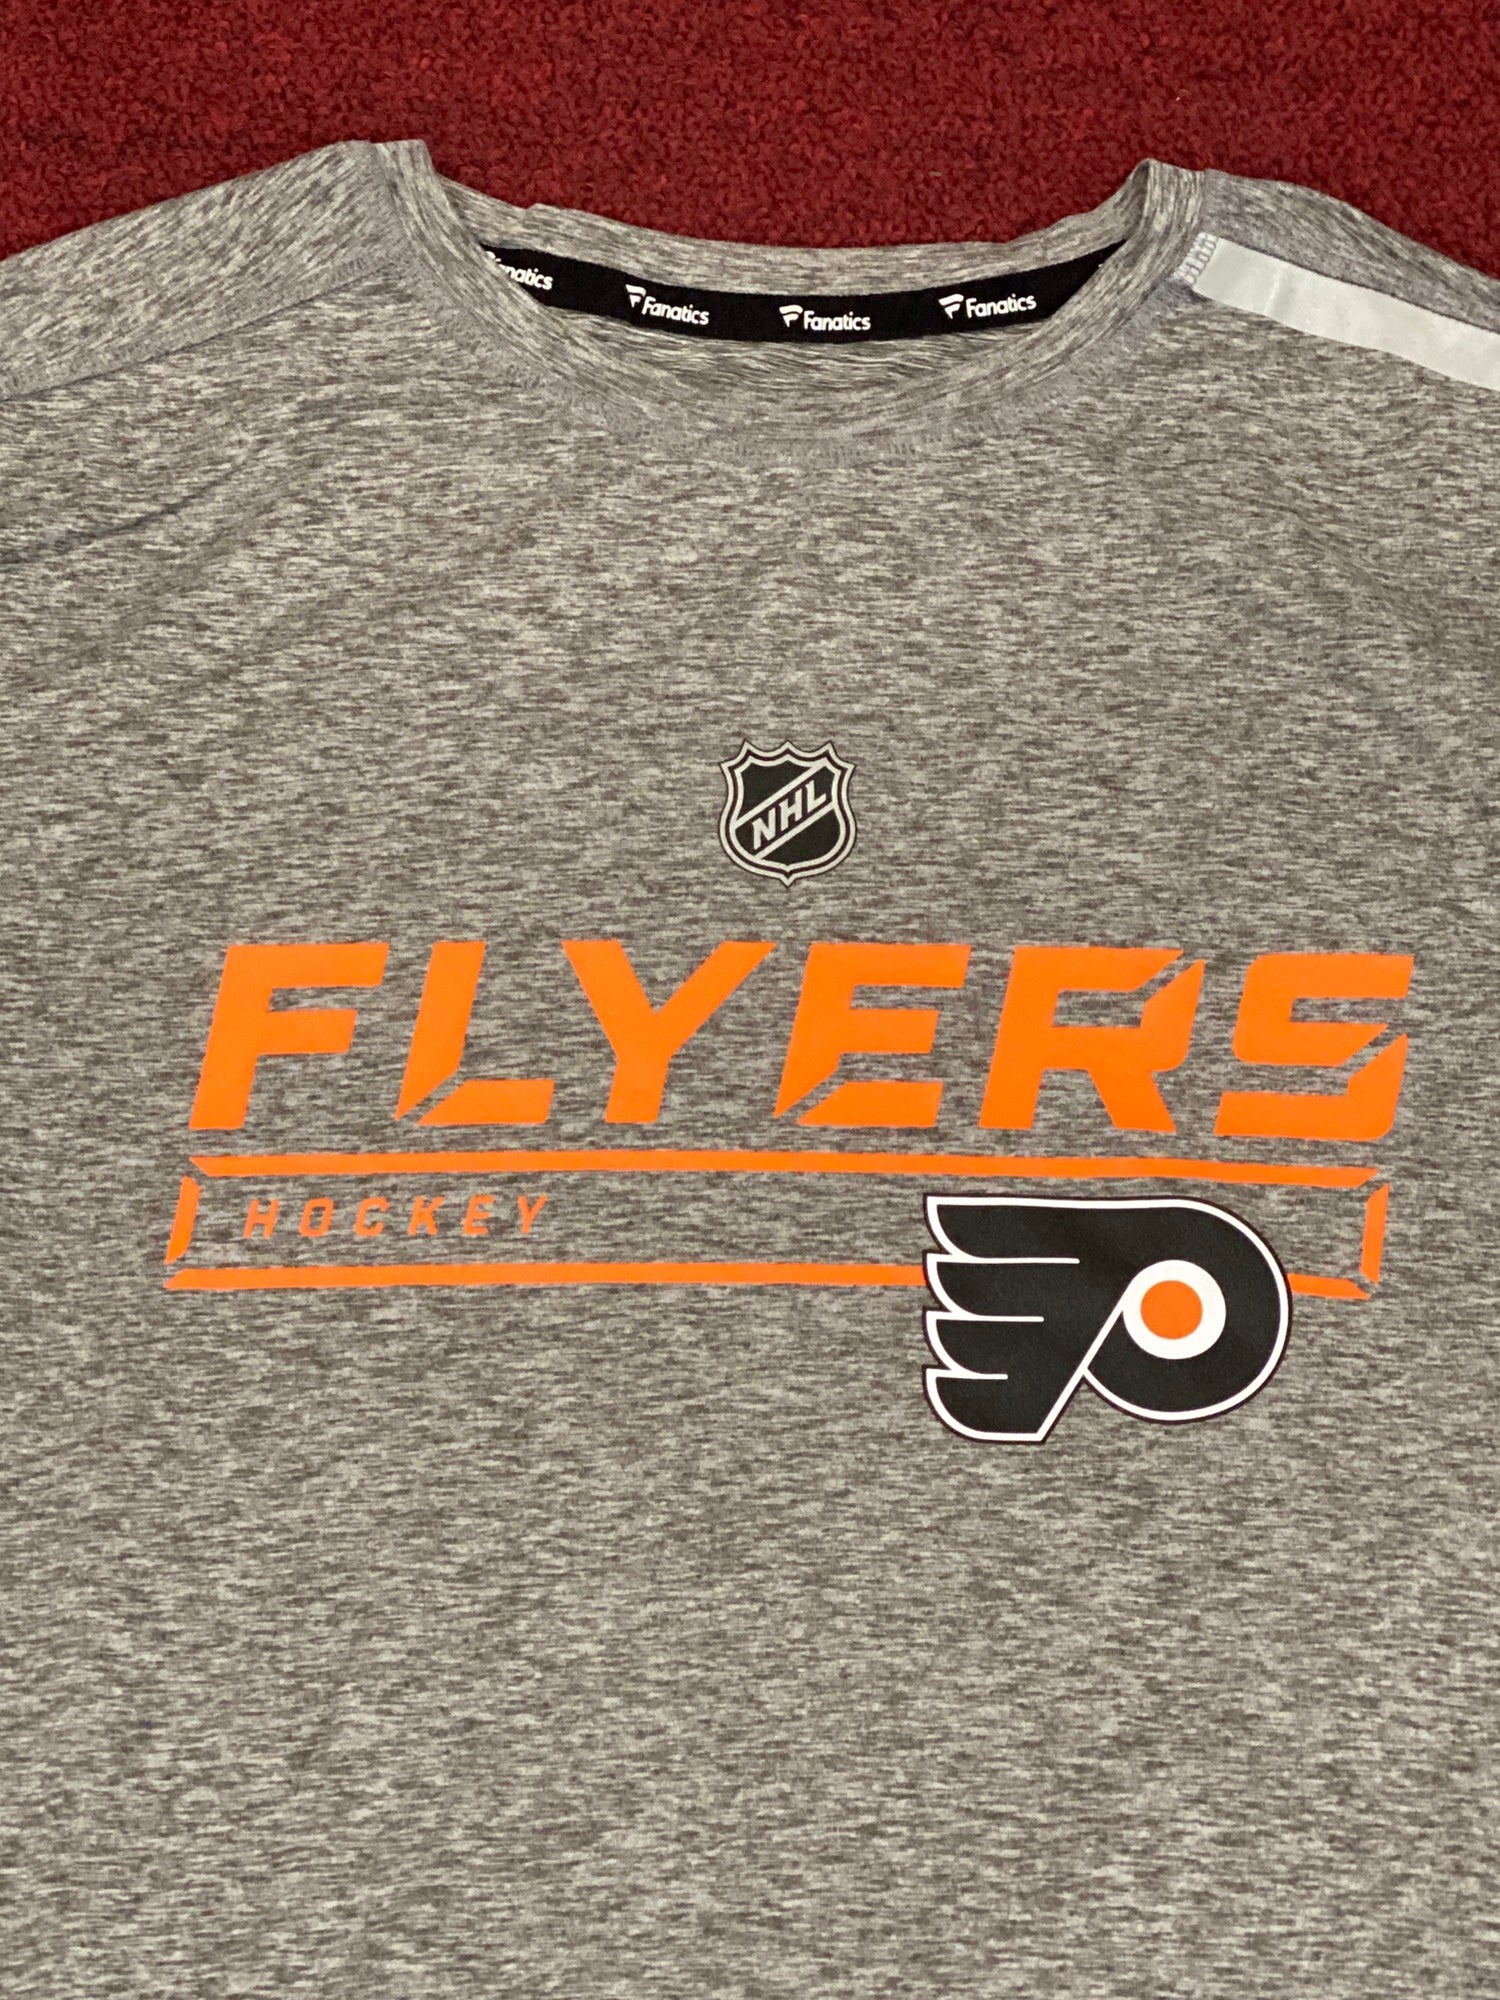 NEW Philadelphia Flyers XXL golf shirt | SidelineSwap